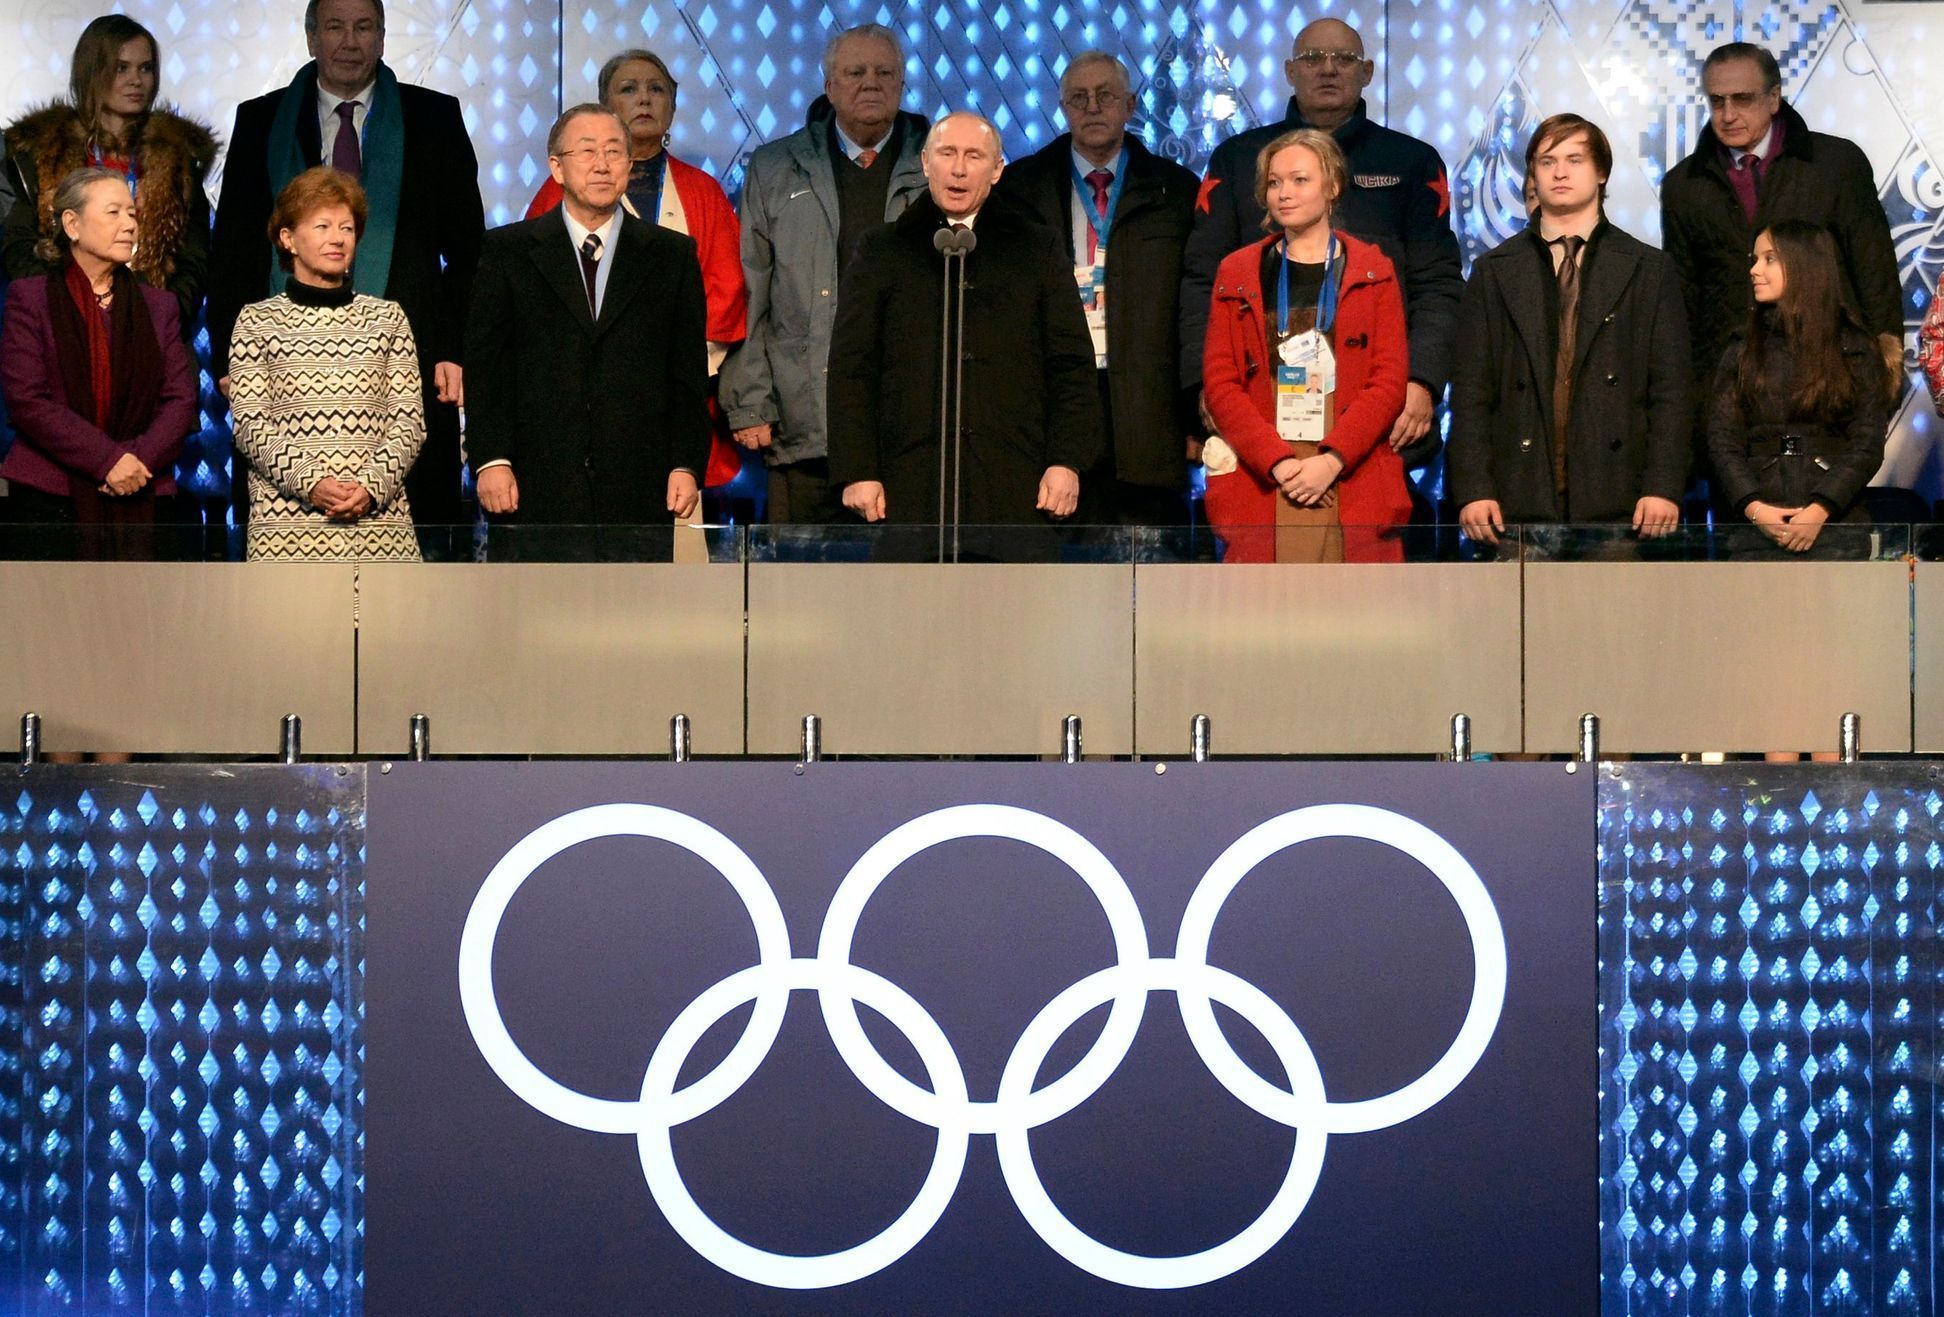 Soči 2014, zahájení: Vladimir Putin oficiálně zahajuje ZOH v Soči